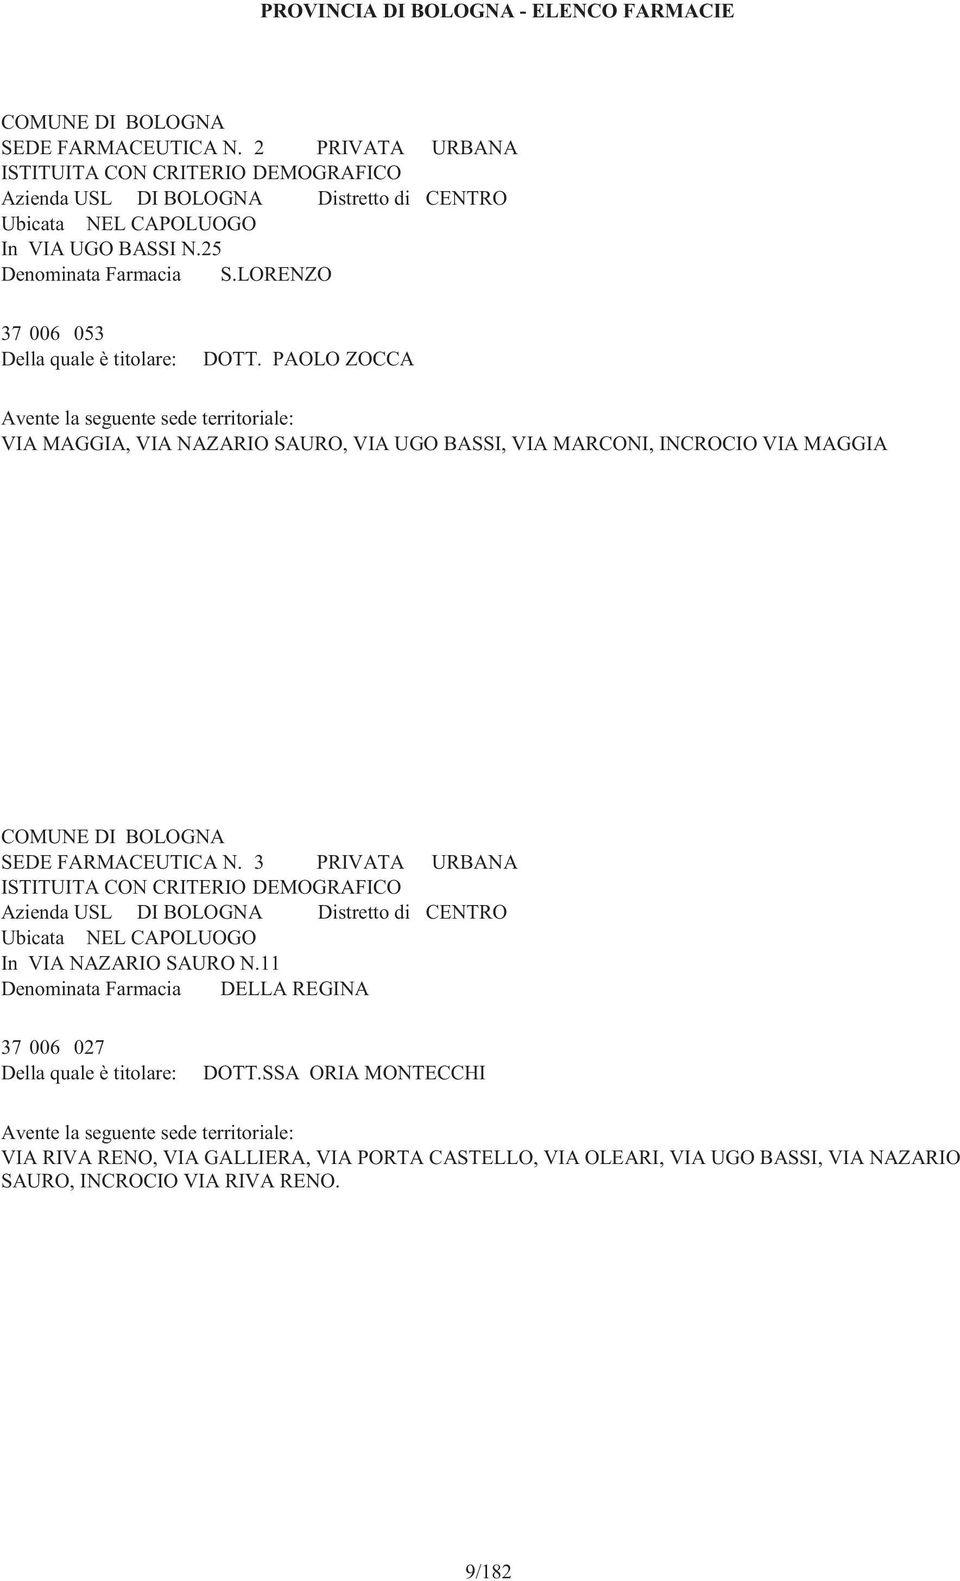 3 PRIVATA URBANA In VIA NAZARIO SAURO N.11 Denominata Farmacia DELLA REGINA 37 006 027 DOTT.